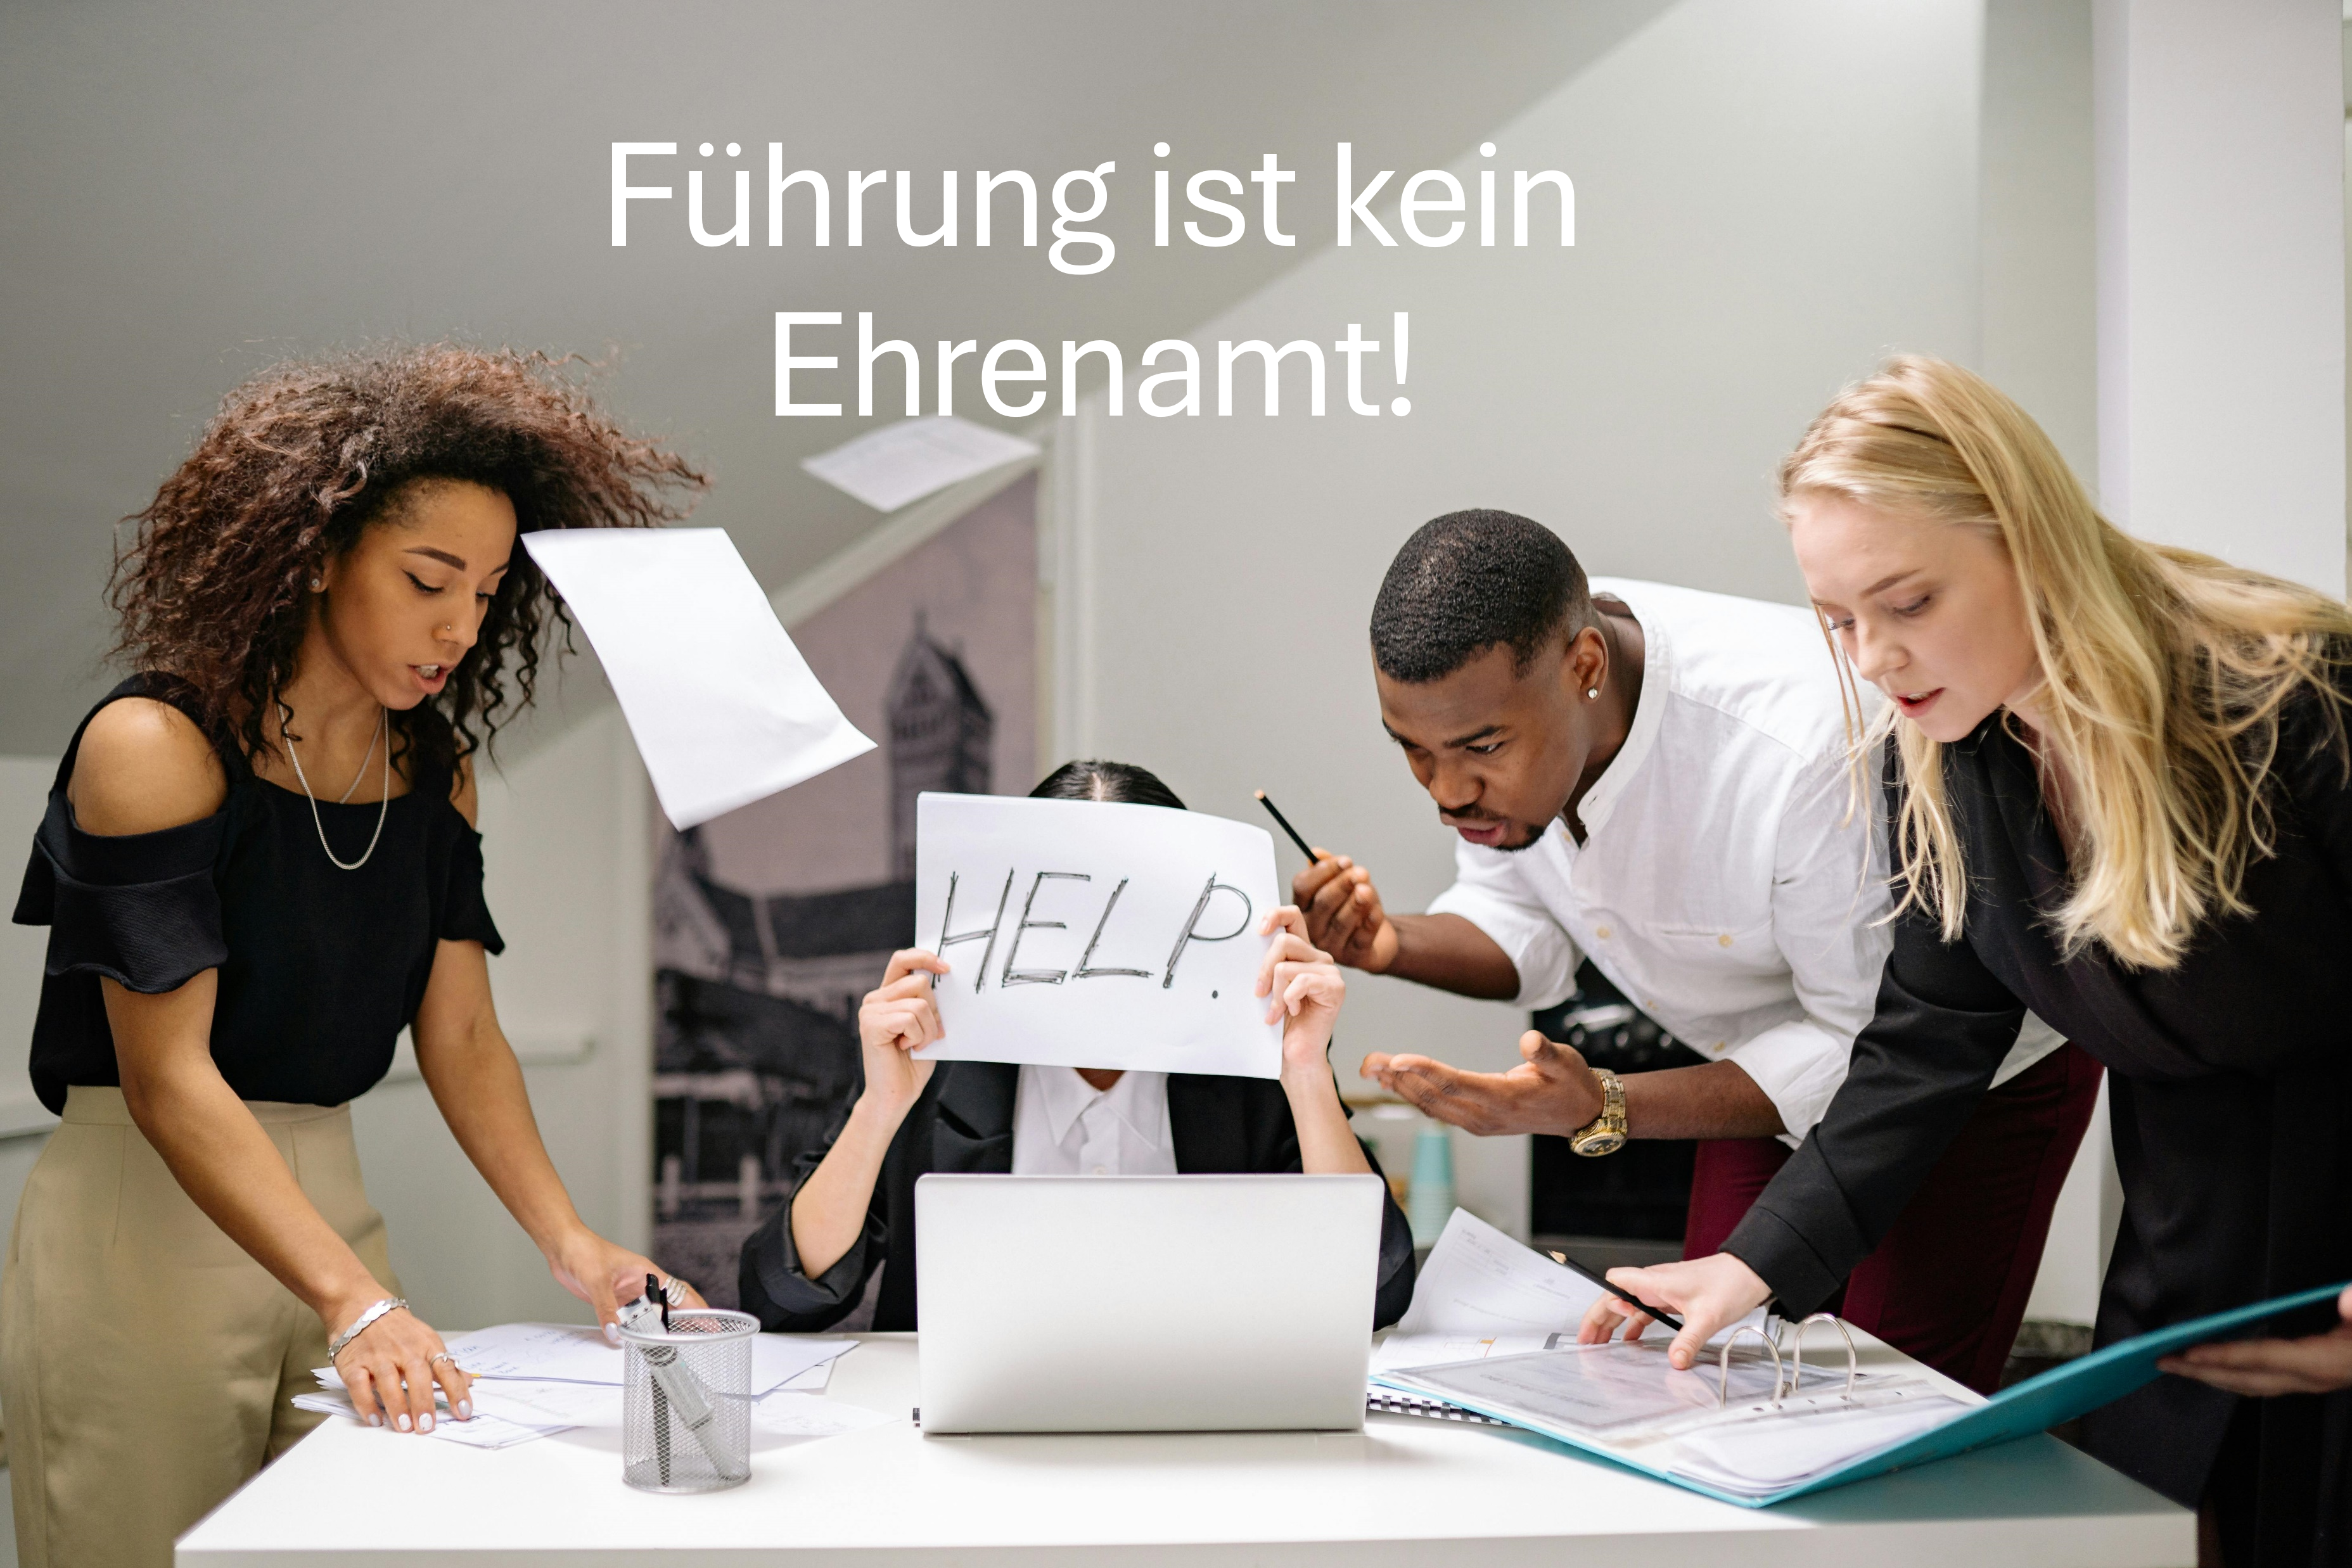 Featured image for “Führung ist kein Ehrenamt!”